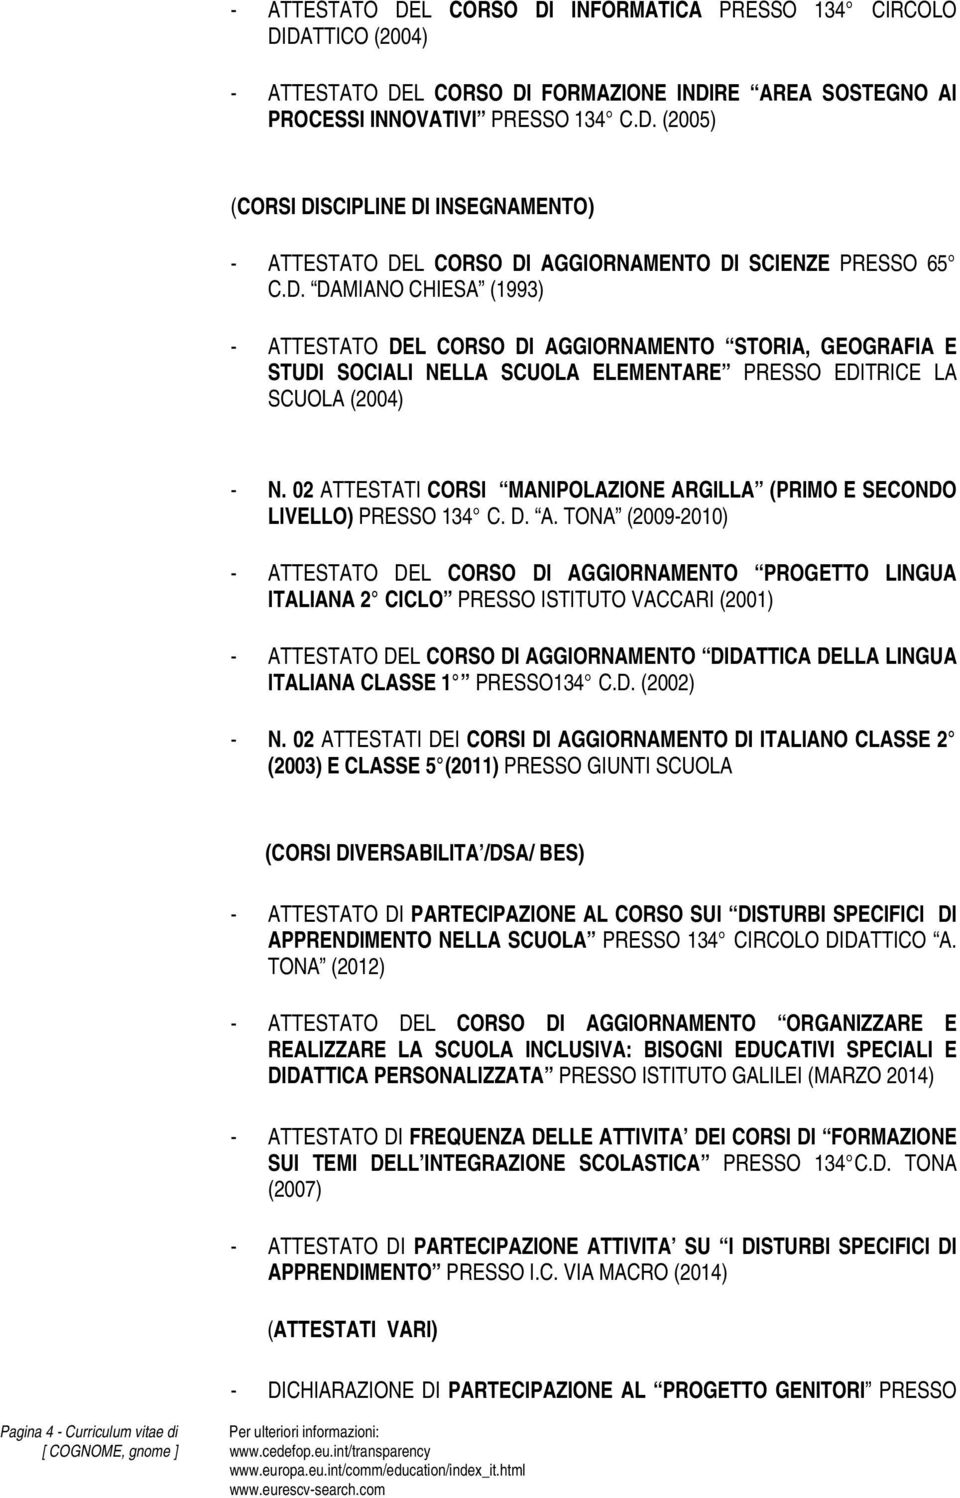 02 ATTESTATI CORSI MANIPOLAZIONE ARGILLA (PRIMO E SECONDO LIVELLO) PRESSO 134 C. D. A. TONA (2009-2010) - ATTESTATO DEL CORSO DI AGGIORNAMENTO PROGETTO LINGUA ITALIANA 2 CICLO PRESSO ISTITUTO VACCARI